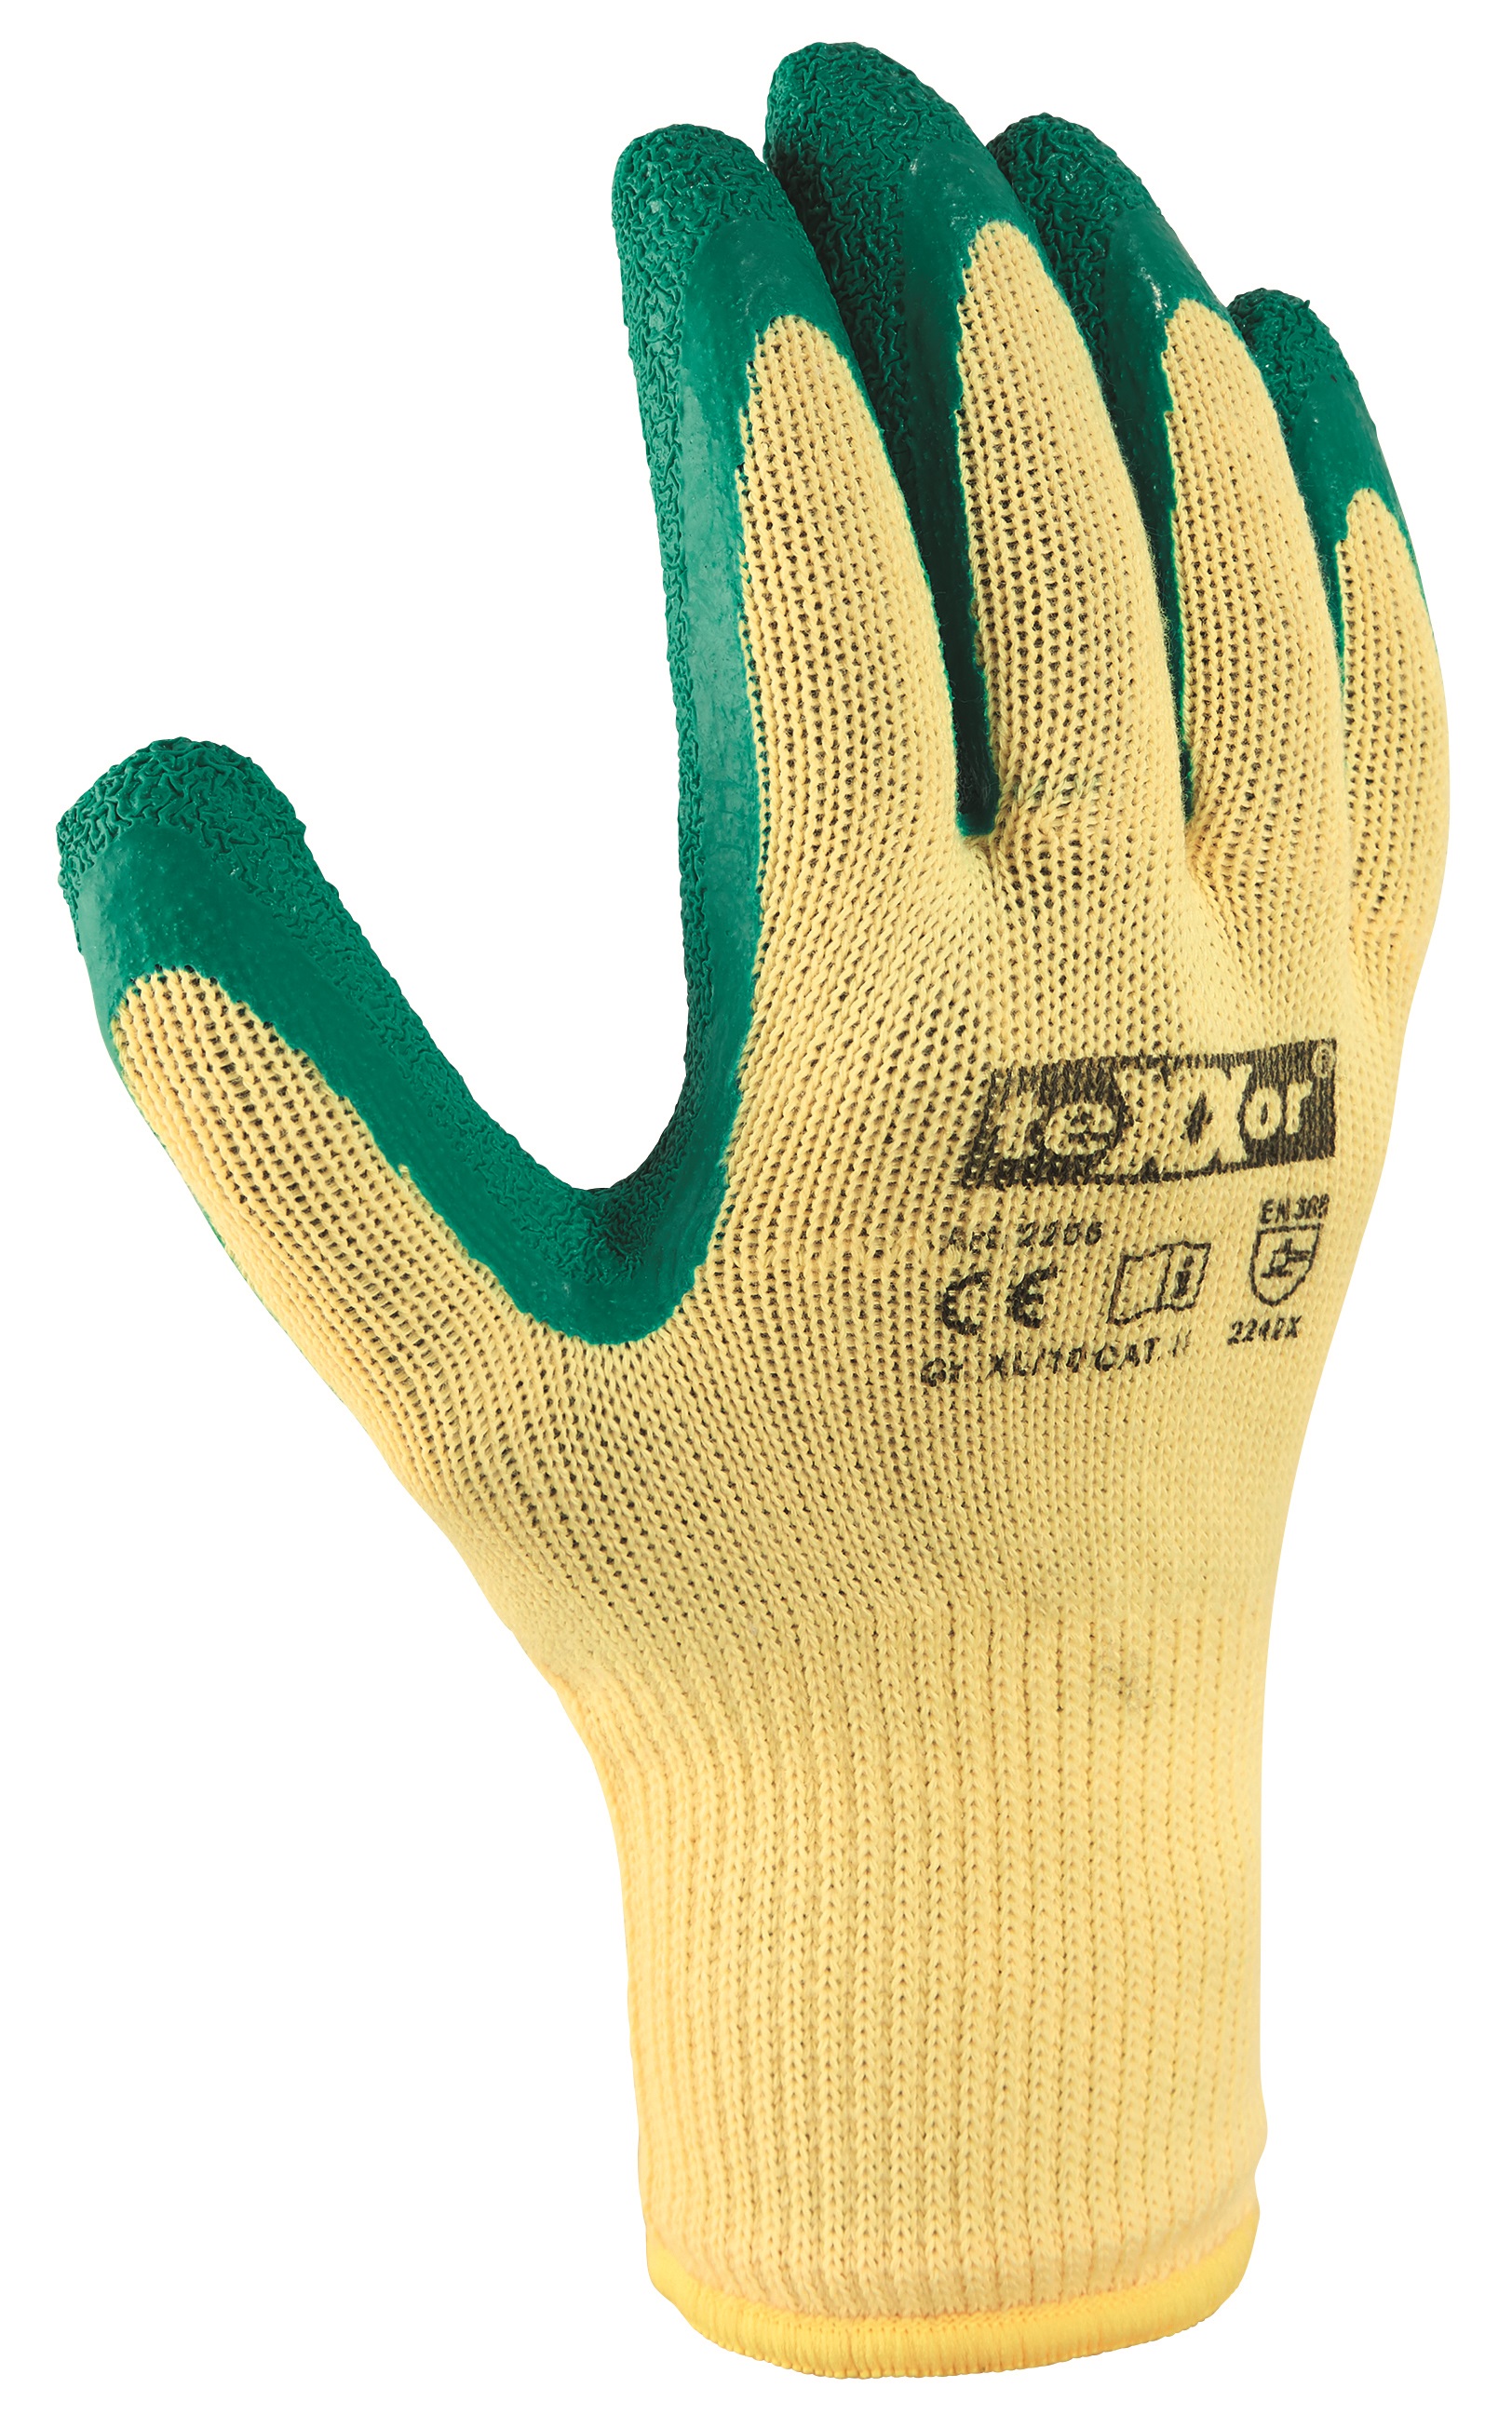 Grobstrick Handschuhe Gr Latex beschichtet grün Arbeit 1 Paar 7873 XL 10 